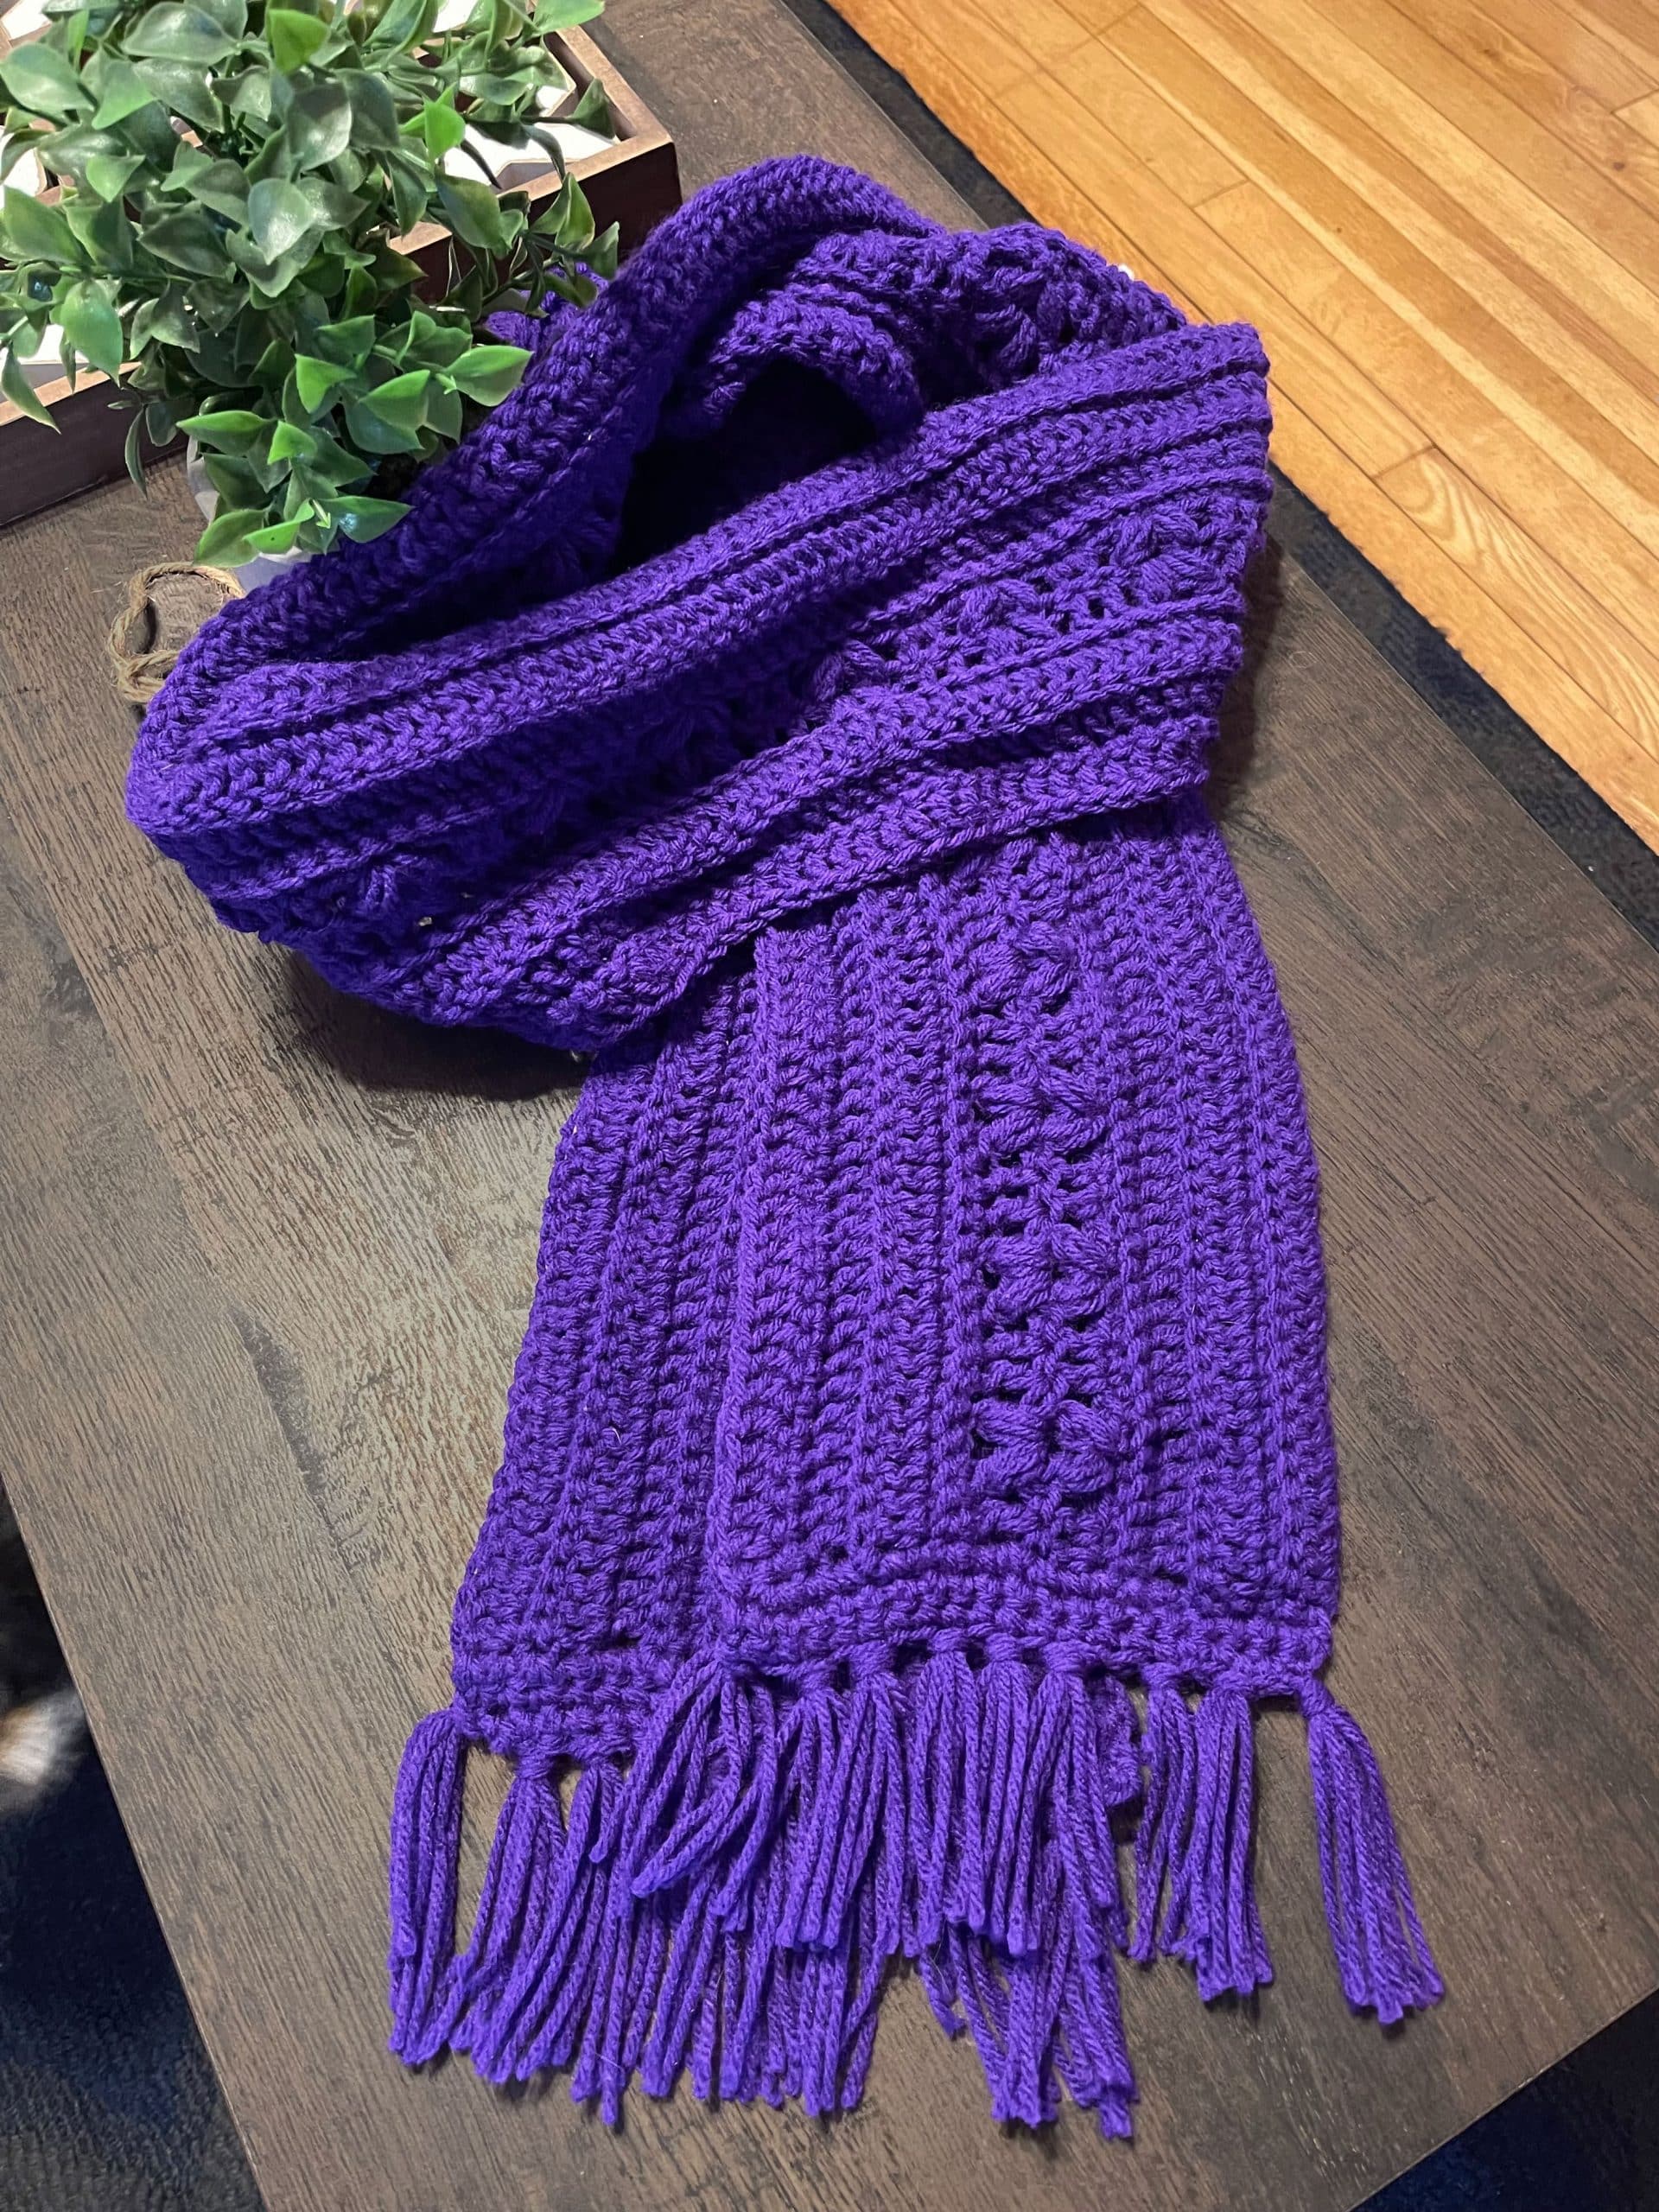 Purple scarf on table